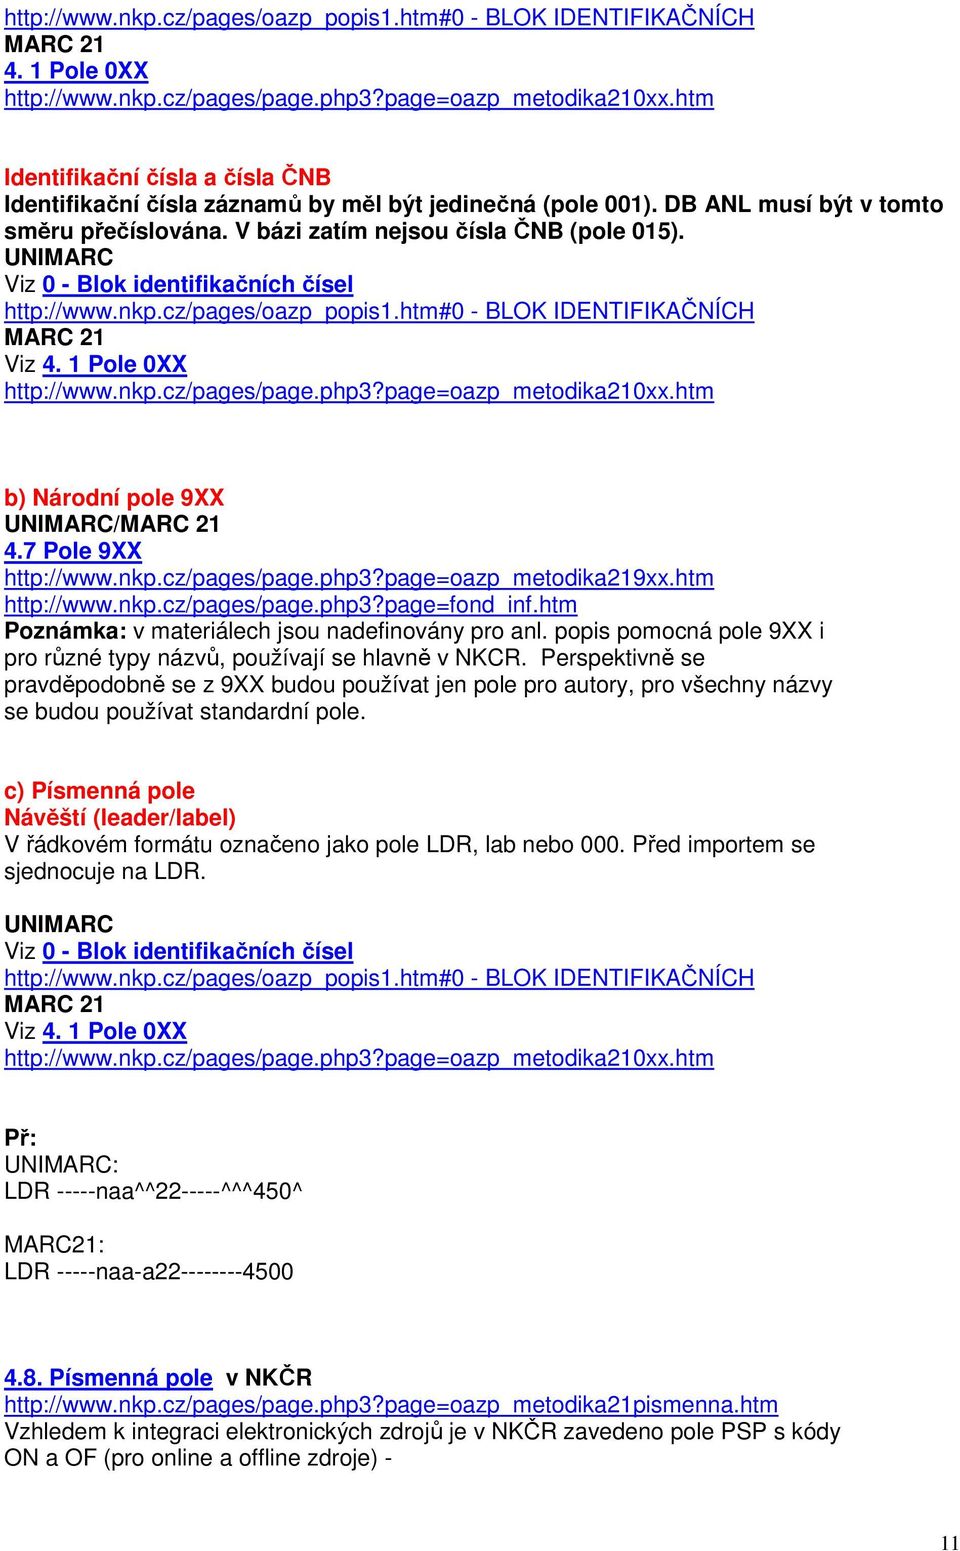 UNIMARC Viz 0 - Blok identifikačních čísel http://www.nkp.cz/pages/oazp_popis1.htm#0 - BLOK IDENTIFIKAČNÍCH MARC 21 Viz 4. 1 Pole 0XX http://www.nkp.cz/pages/page.php3?page=oazp_metodika210xx.